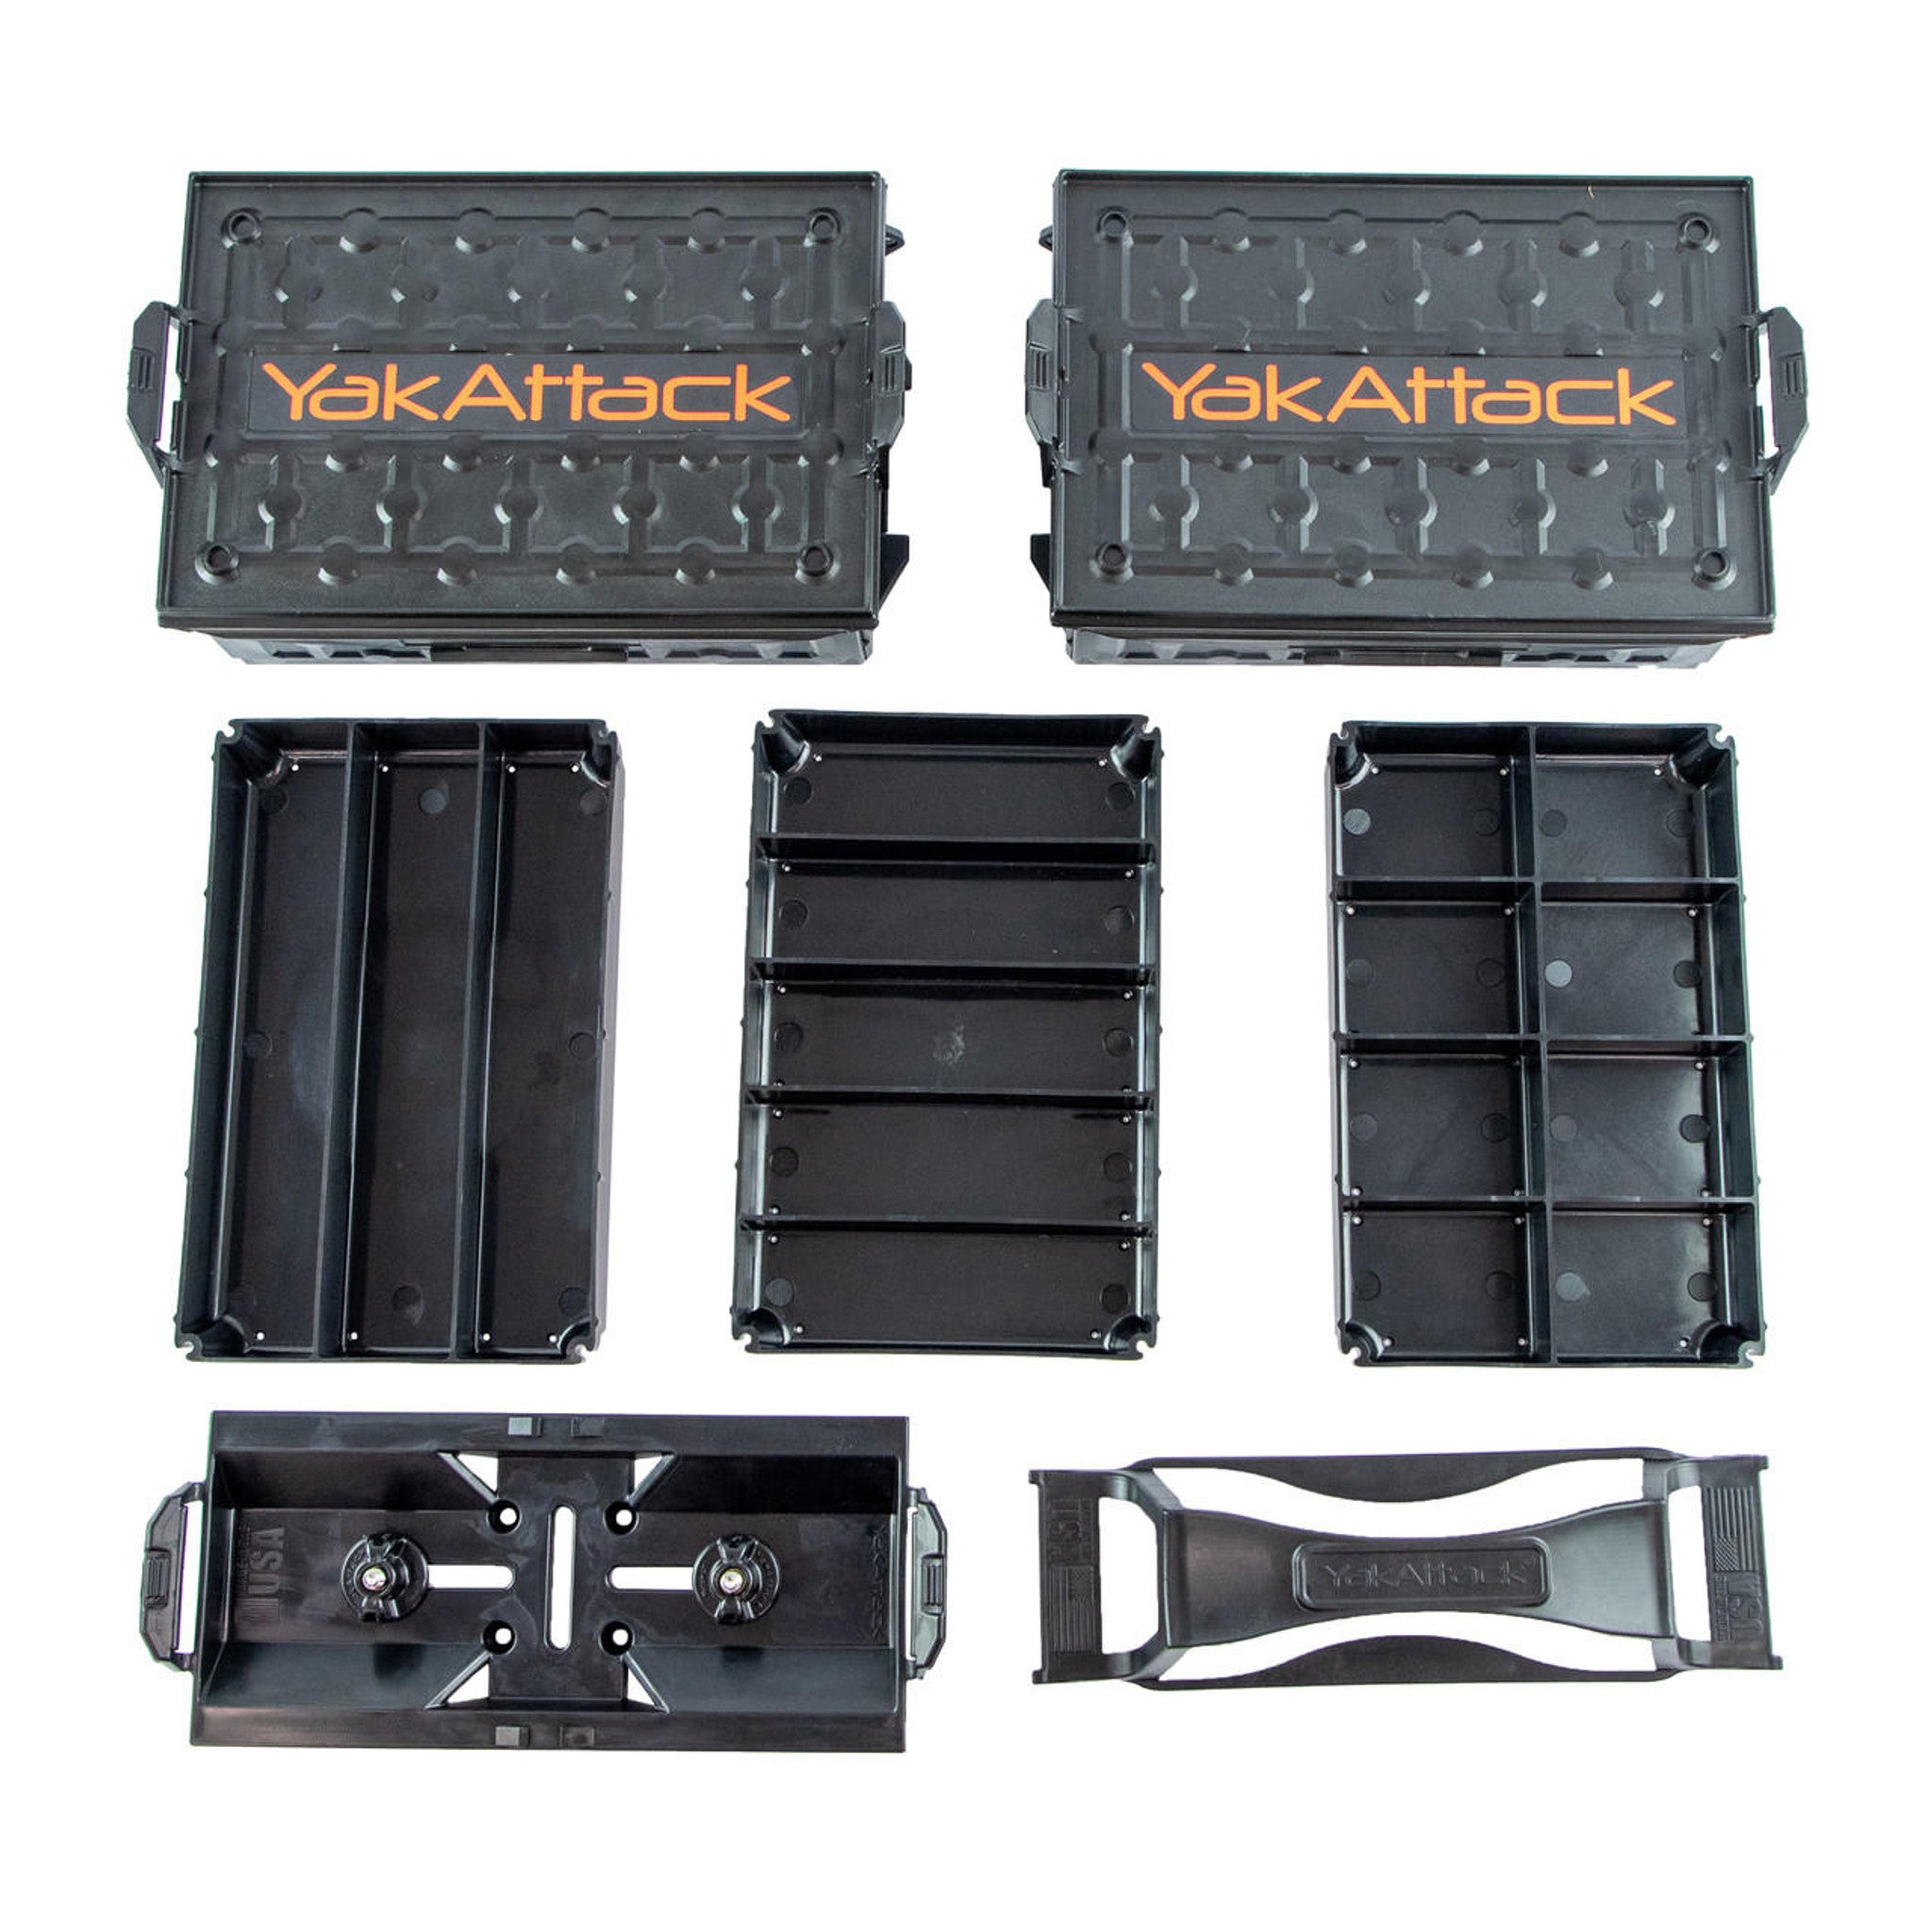 Fully Loaded TracPak Kit